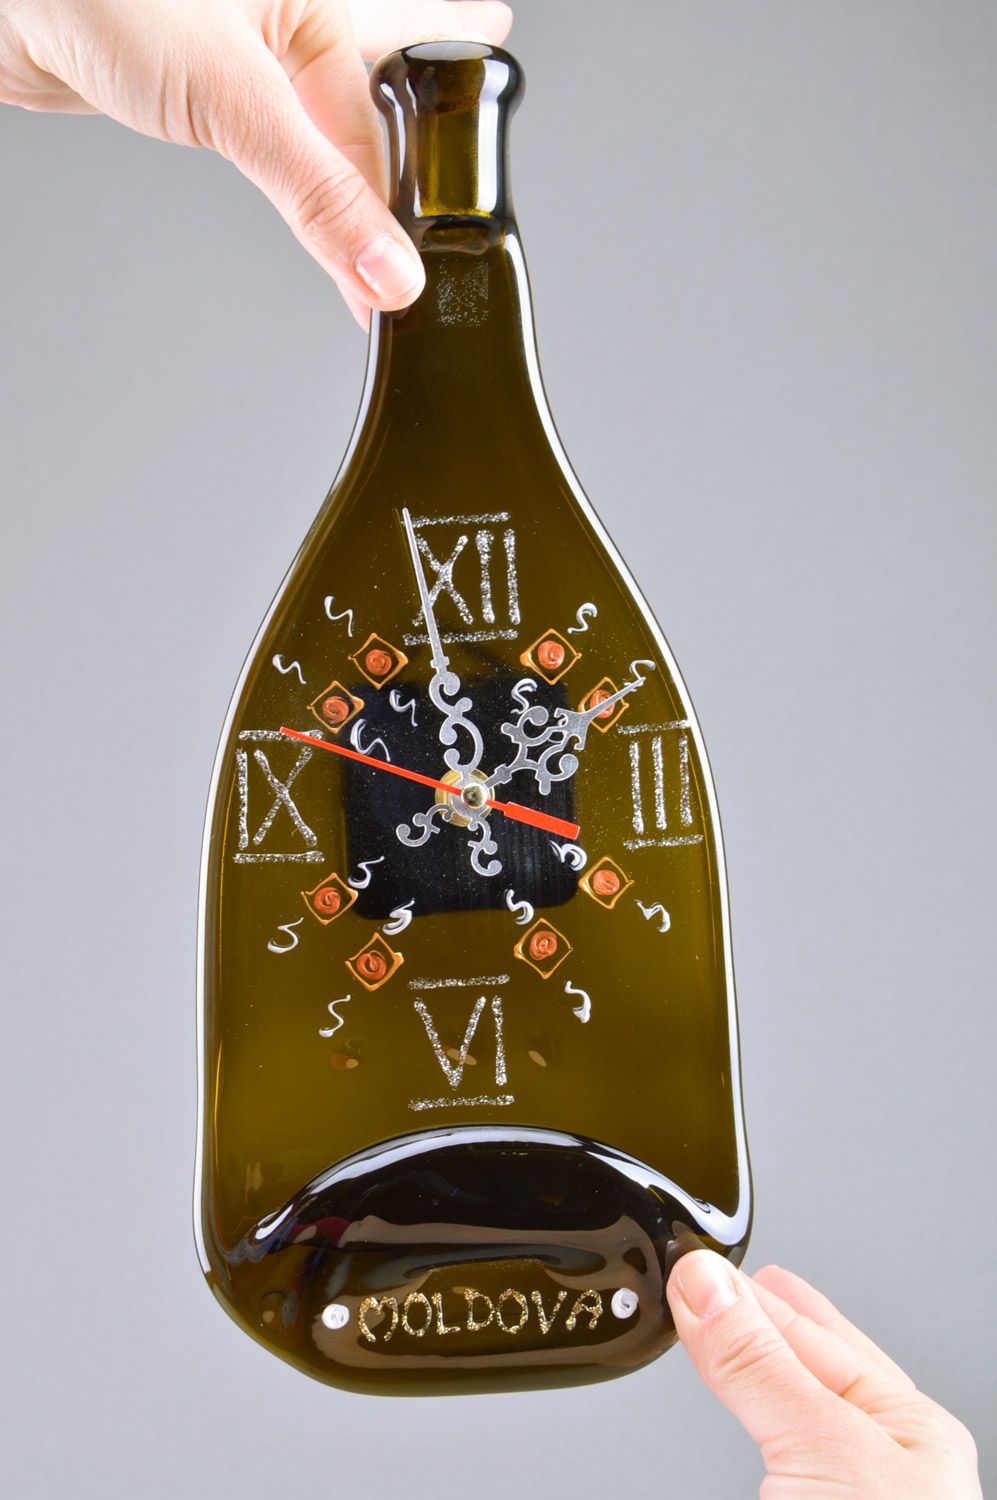 Стеклянные настенные часы ручной работы в технике фьюзинг темные в виде бутылки фото 3